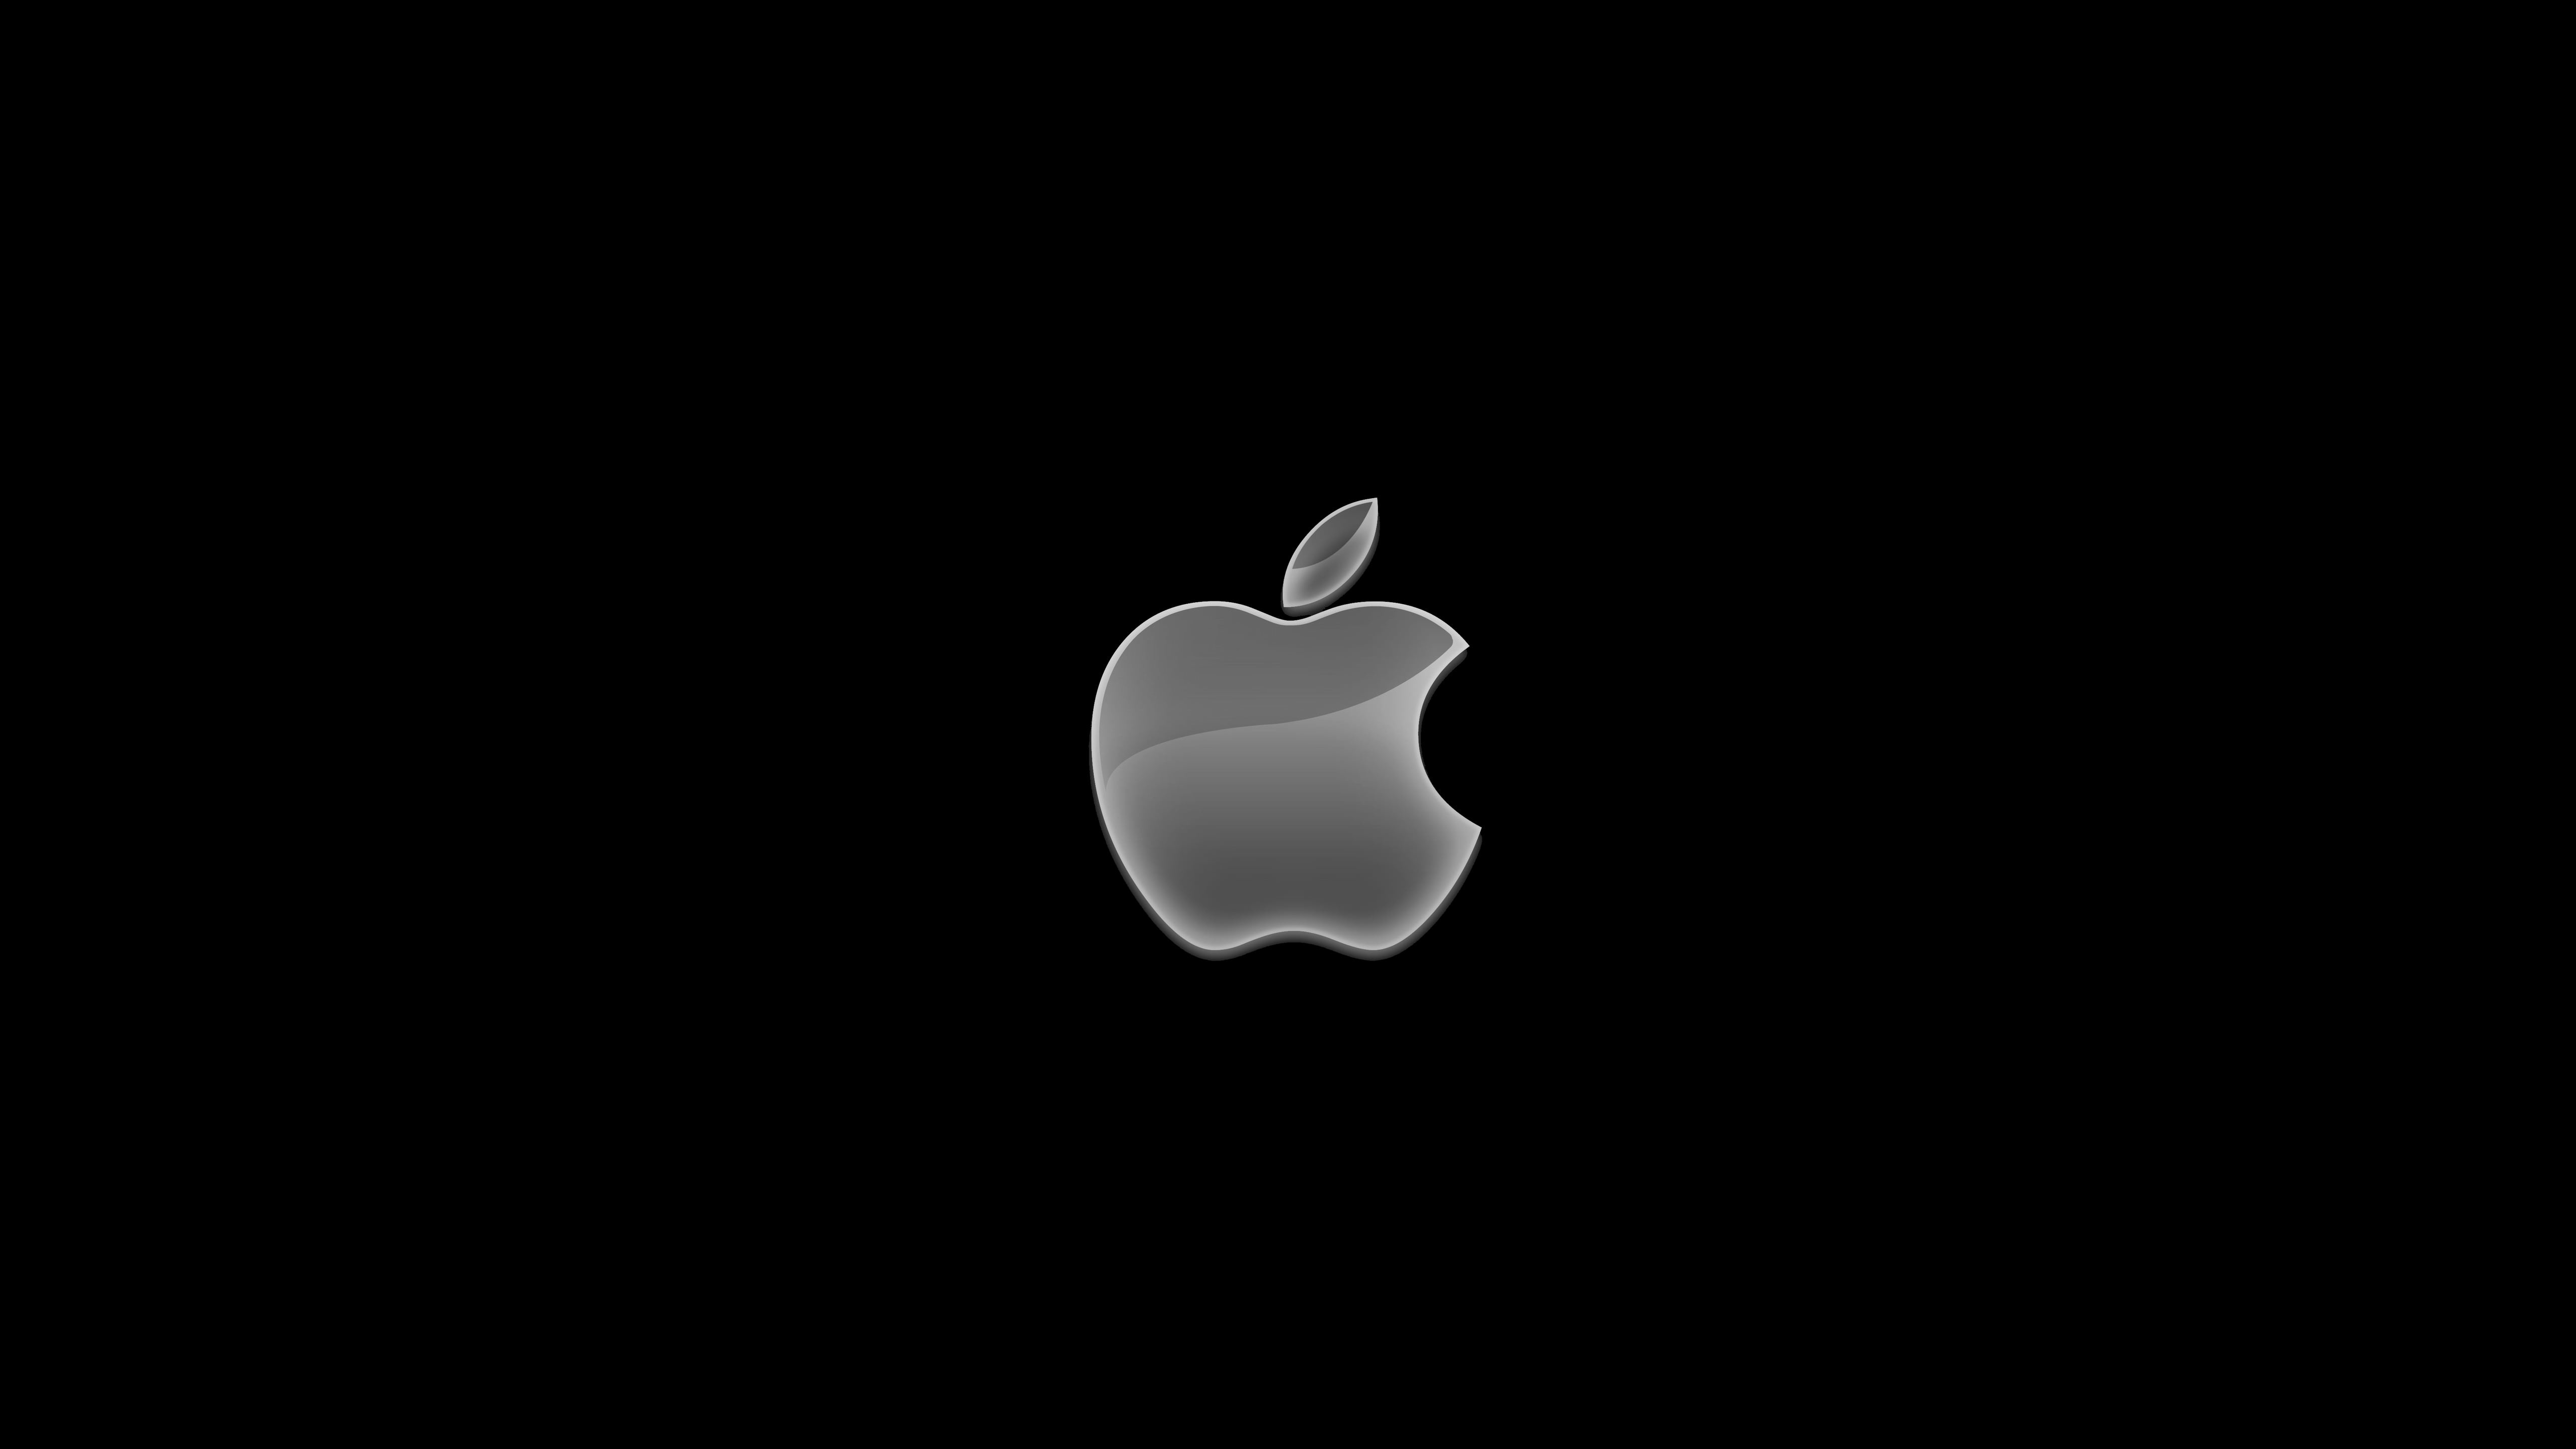 Айфон вид обои. Логотип Apple. Яблоко айфон. Заставка на айфон. Яблоко на черном фоне.